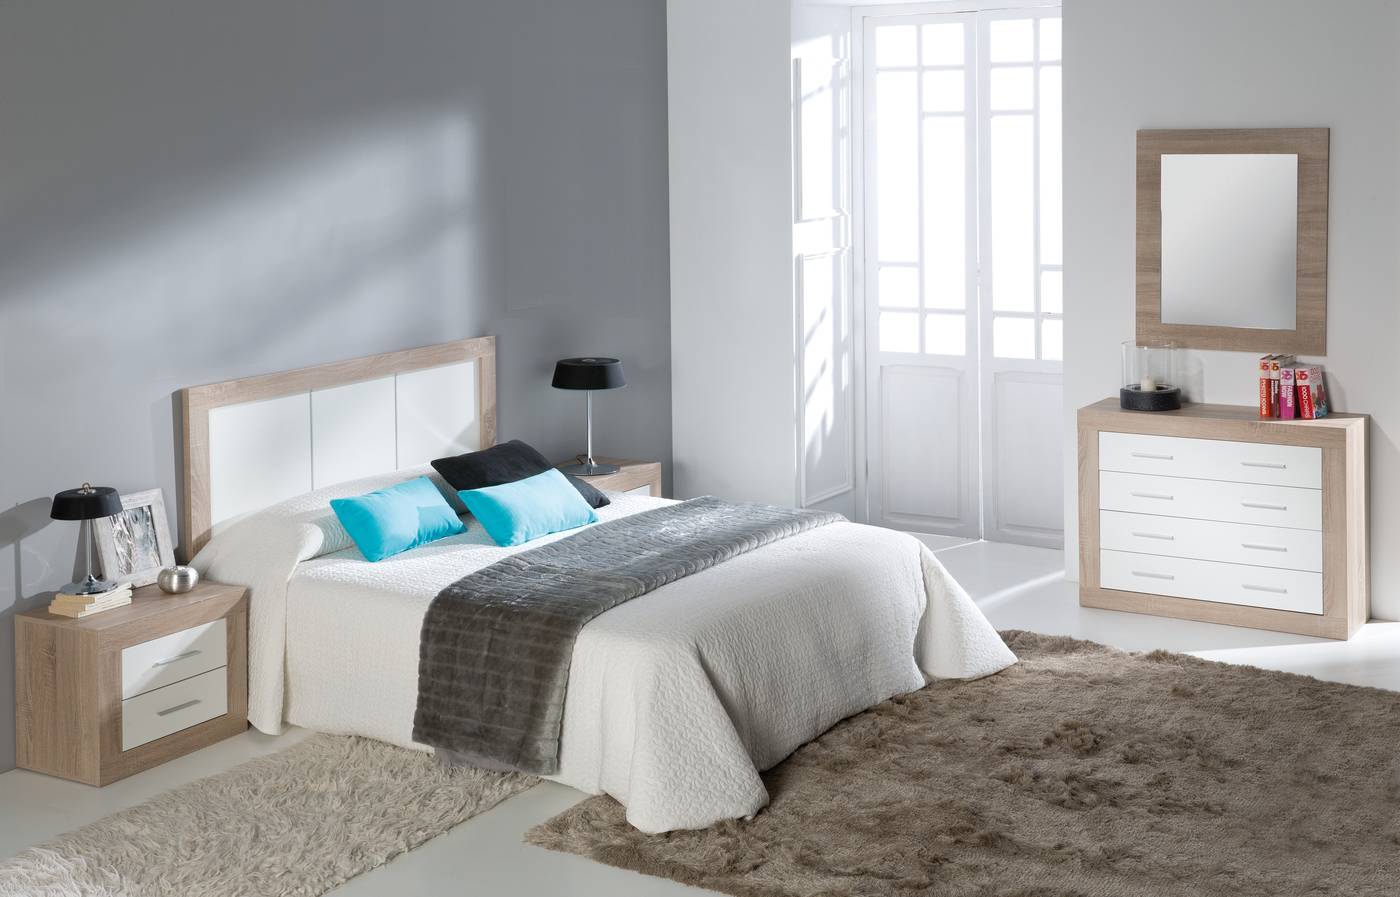 Dormitorio Blanco-Roble - Dormitorio de matrimonio color roble claro combinado con blanco